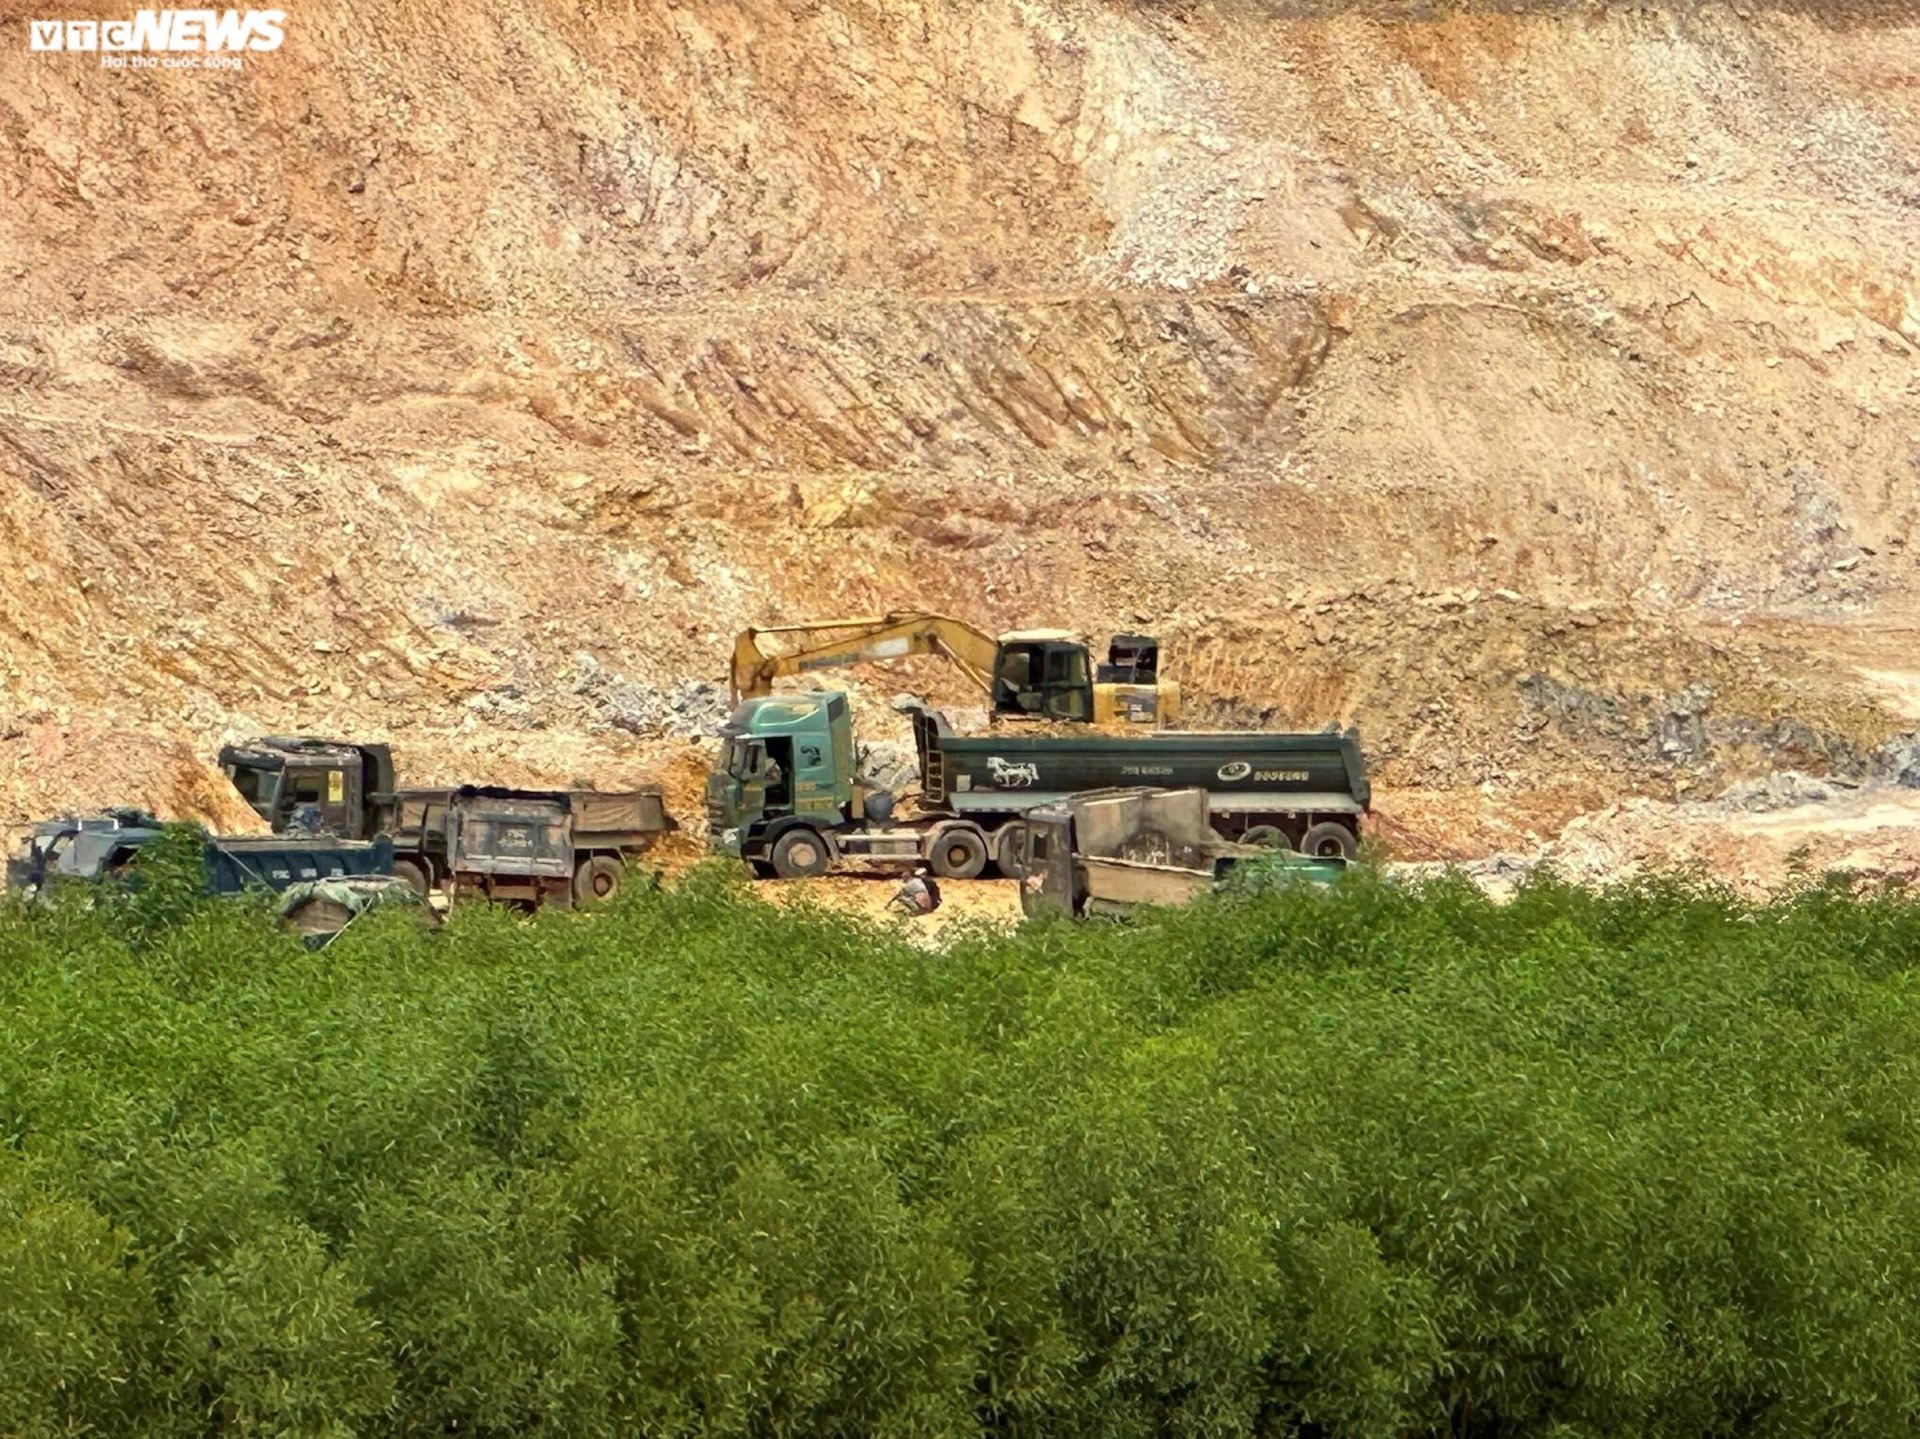 Thâm nhập đại công trường khai thác khoáng sản sai phép ở Thừa Thiên - Huế - Ảnh 7.